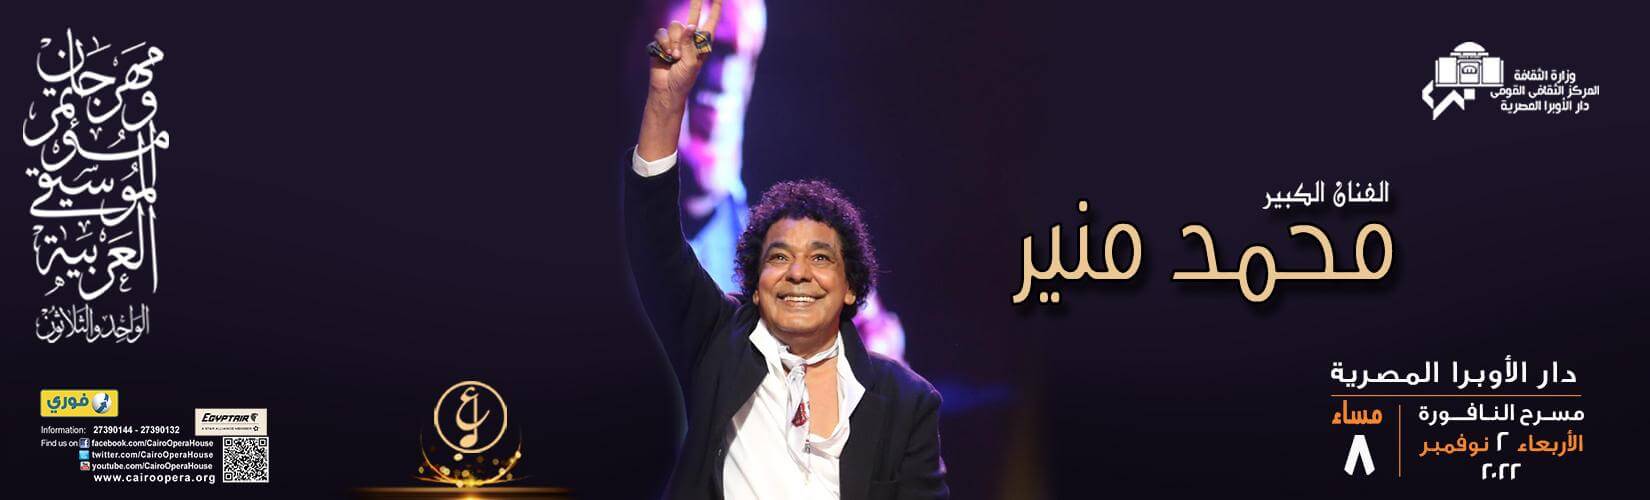 محمد منير في دار الأوبرا المصرية في نوفمبر 2022 على خشبة مسرح النافورة